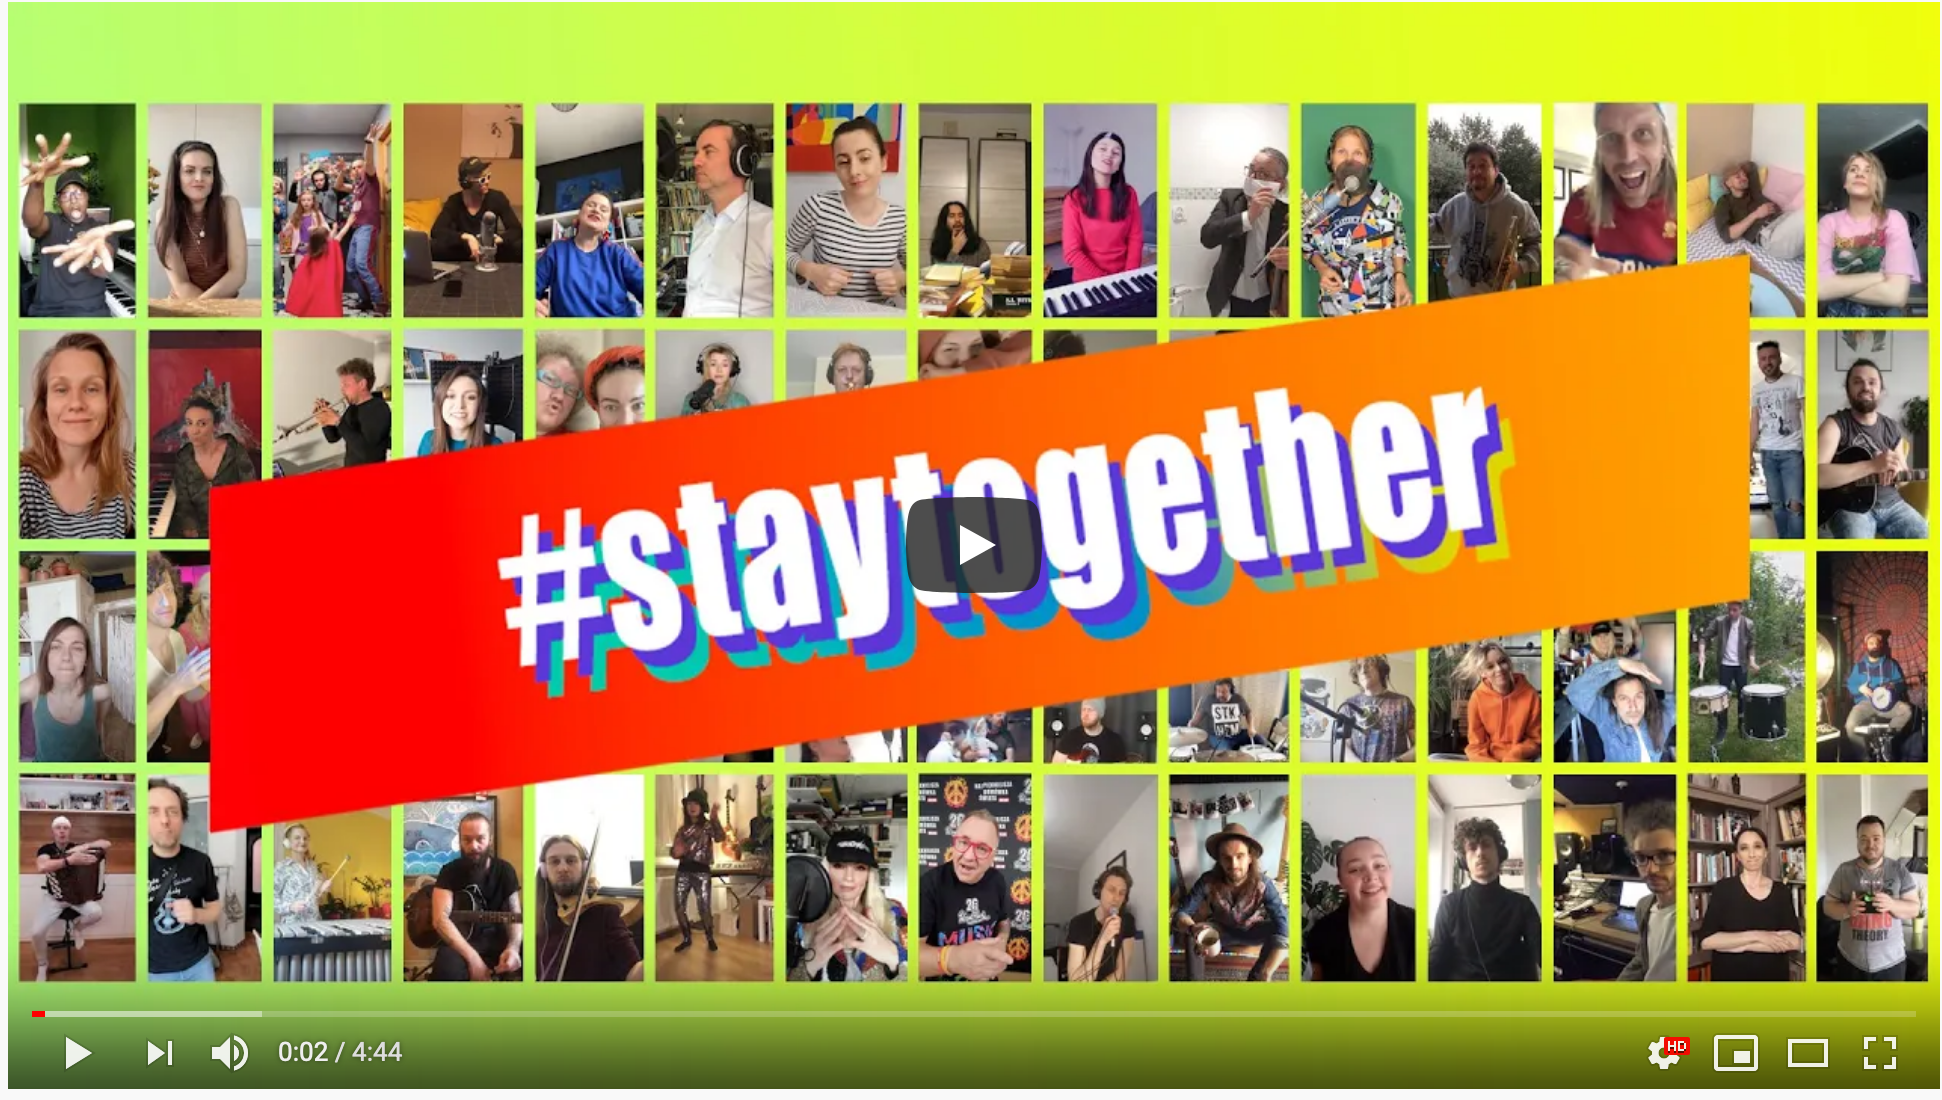 WOŚP #StayTogether - Odpowiedzialni Razem! OpenStage info oswiecim